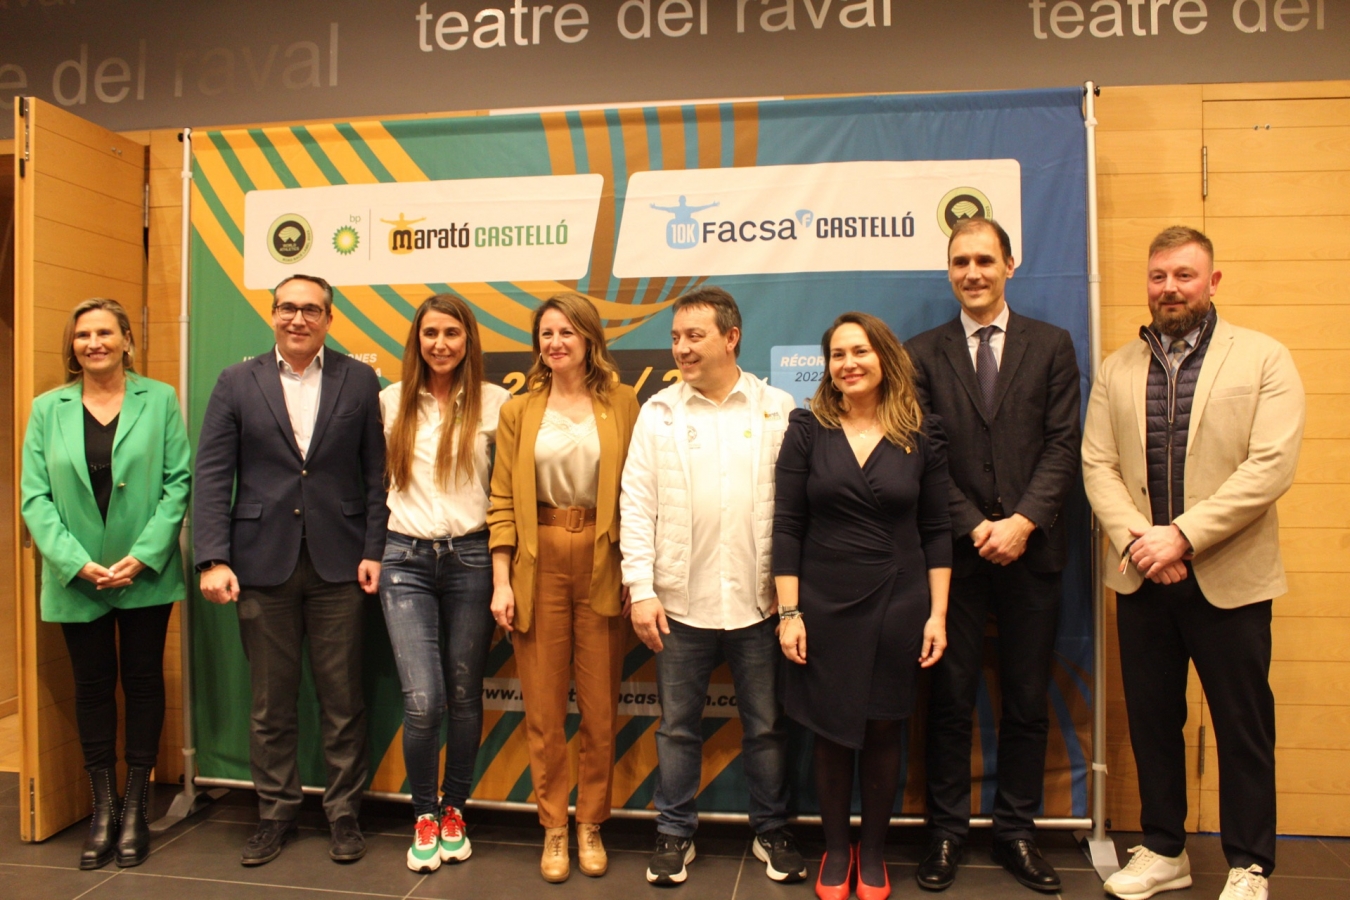 La Diputación de Castellón destaca los valores del deporte en la presentación de la XIV edición del Marató bp Castelló